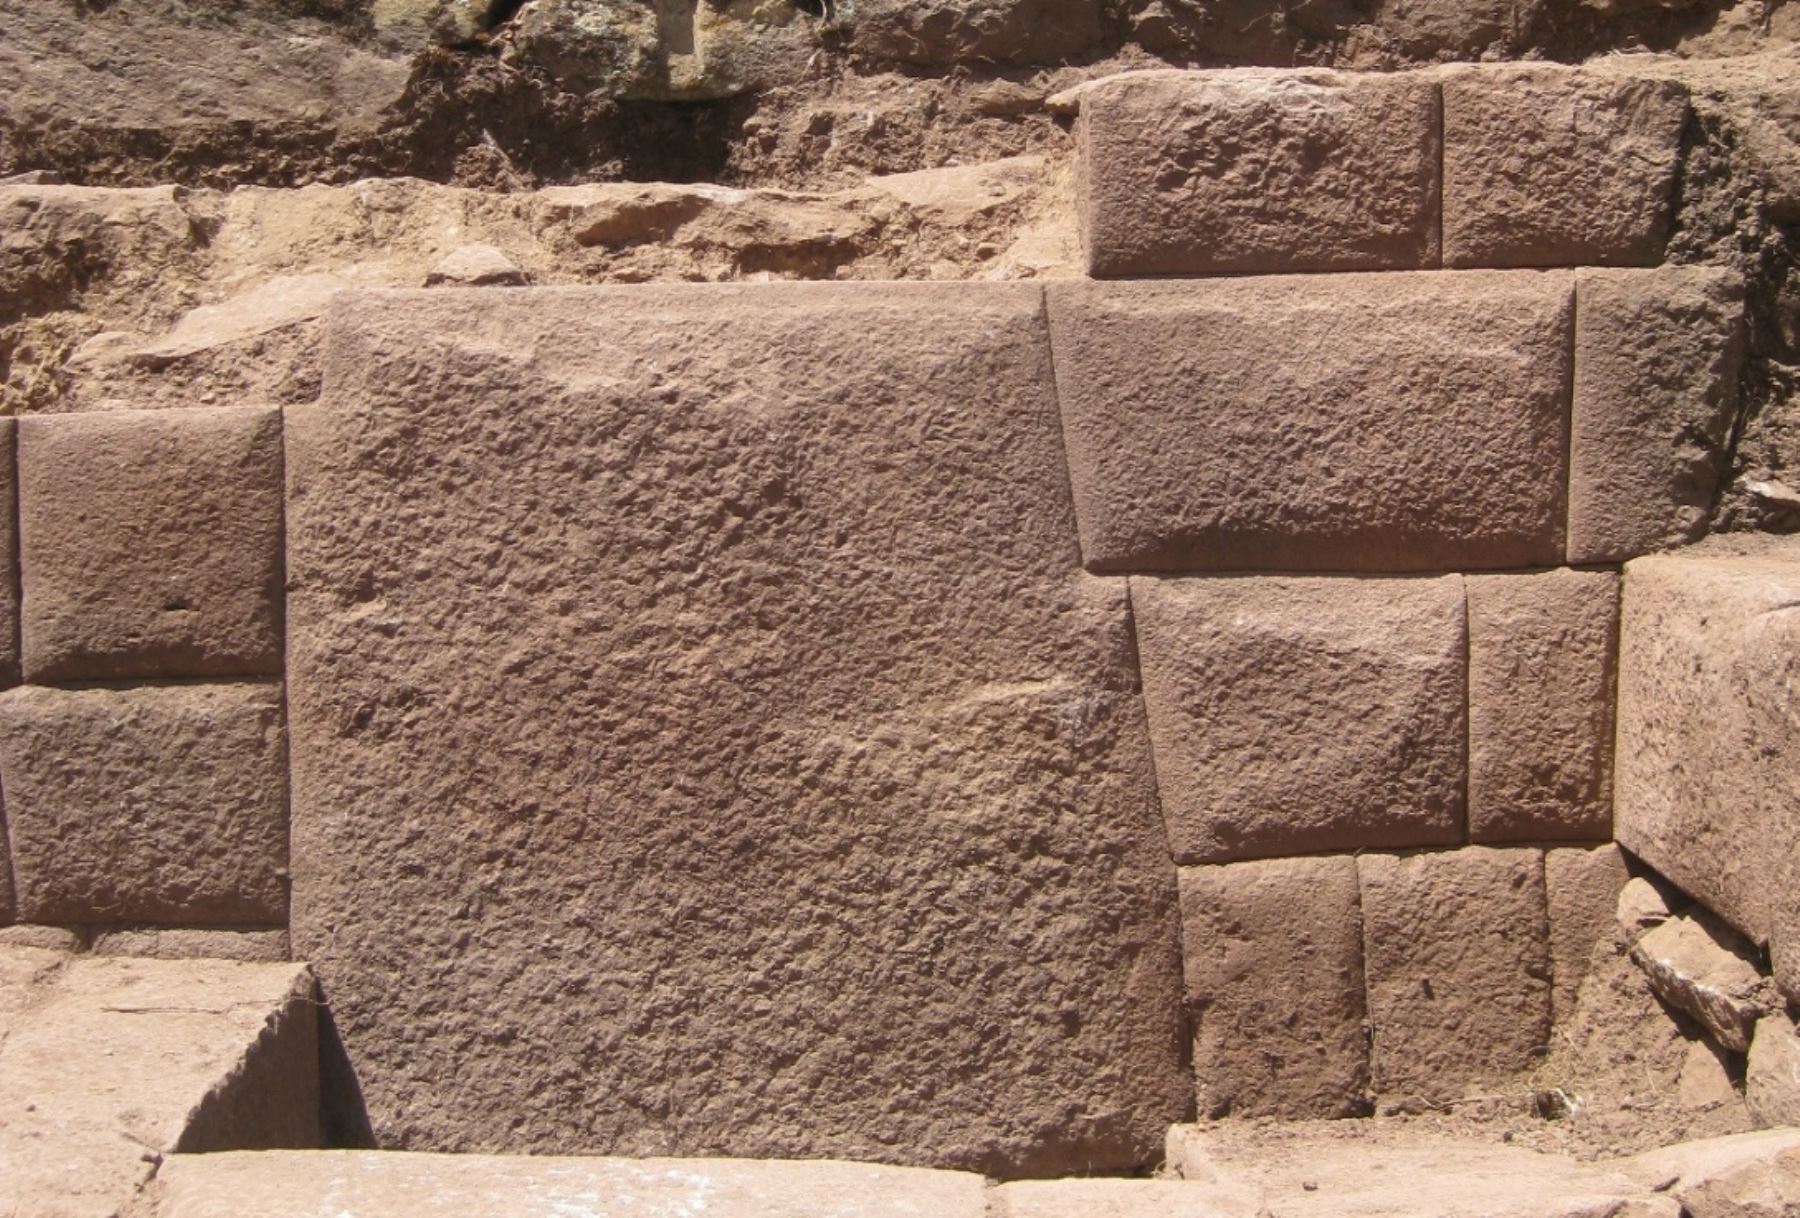 Descubren piedra de 13 ángulos en complejo arqueológico Inkawasi, en Huancavelica.